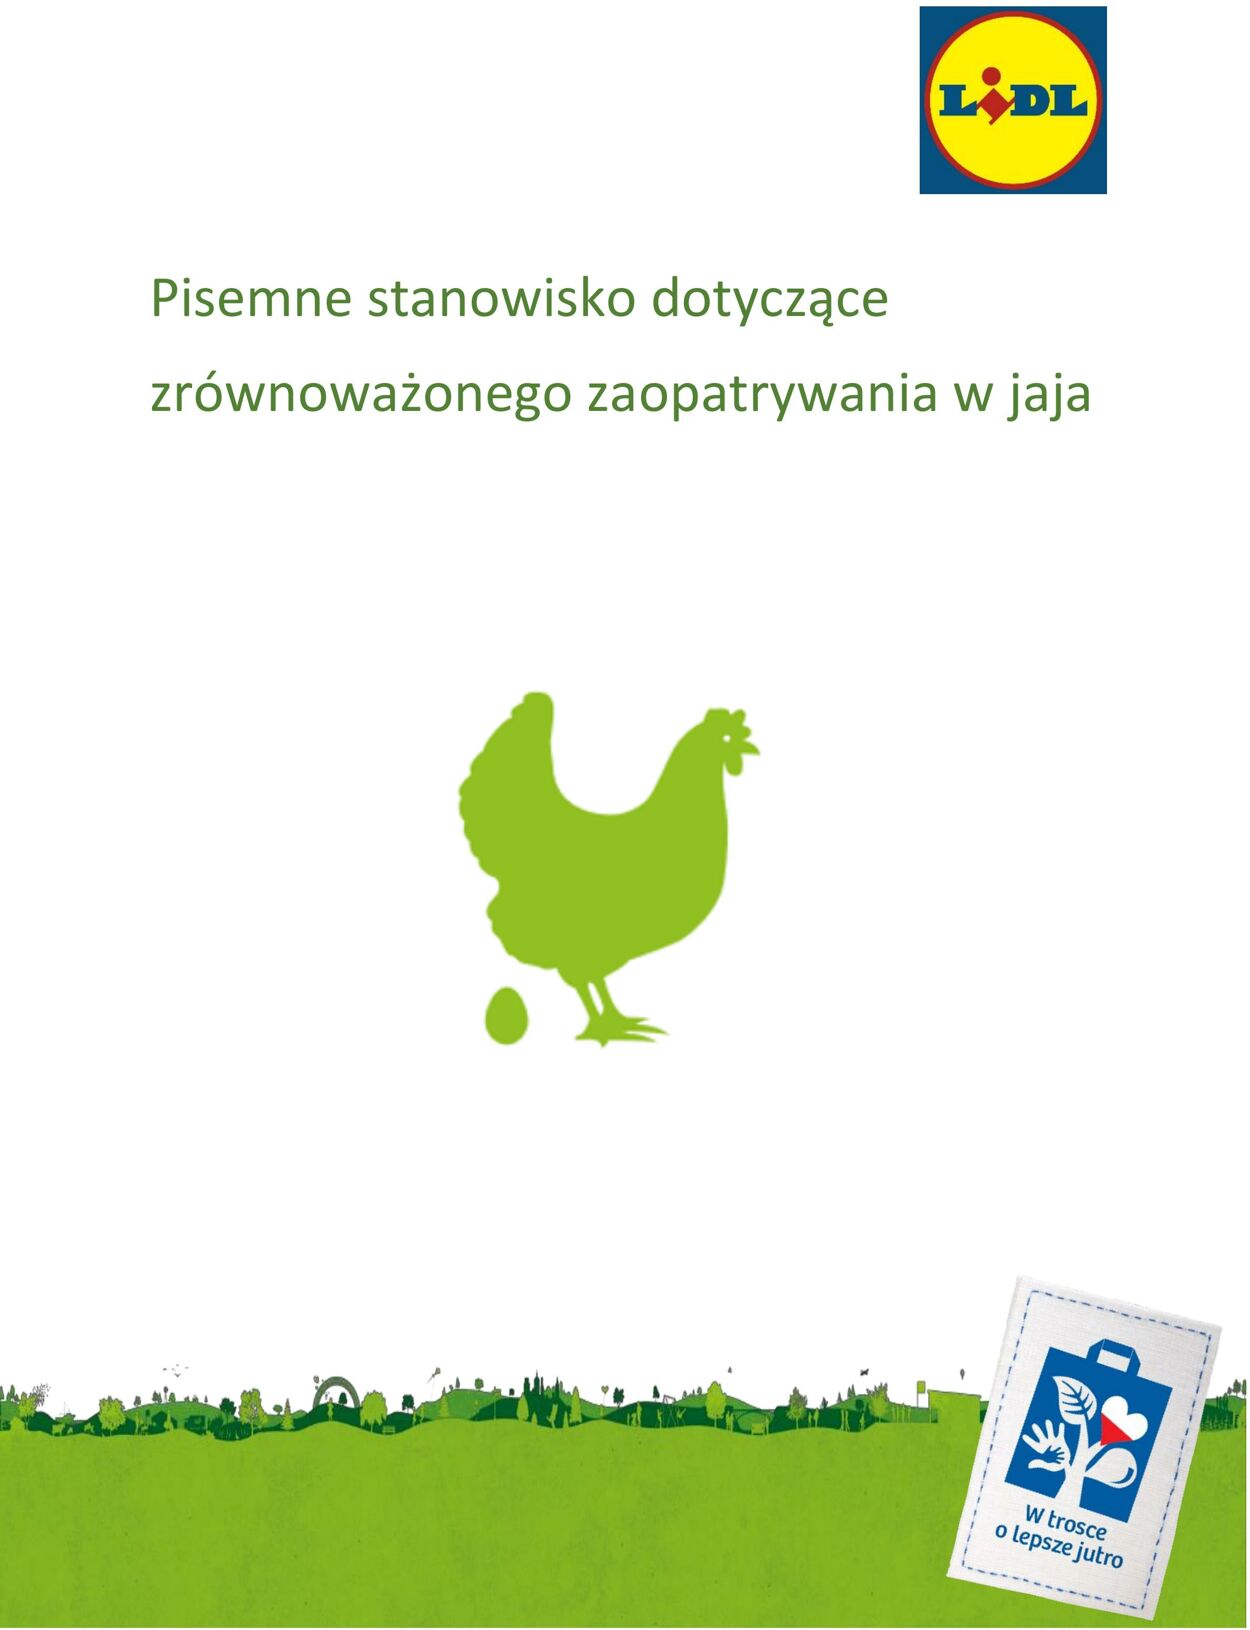 Gazetka Lidl - Stanowisko dotyczące zrównoważonego zaopatrywania w jaja 1 sty, 2019 - 31 gru, 2030